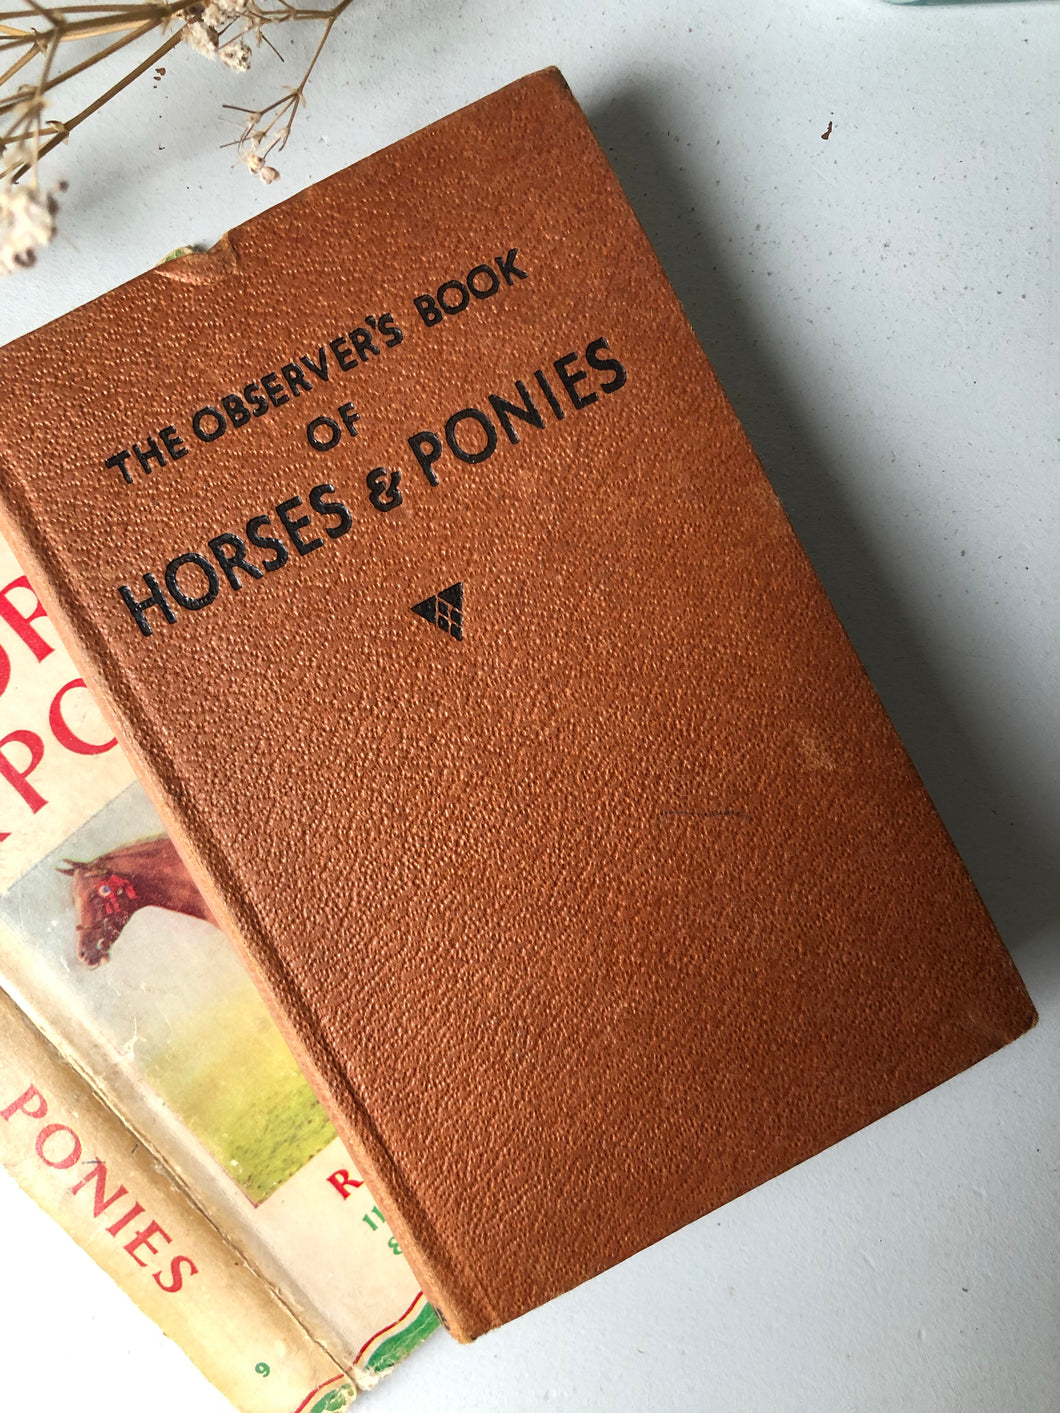 Observer book of Horses